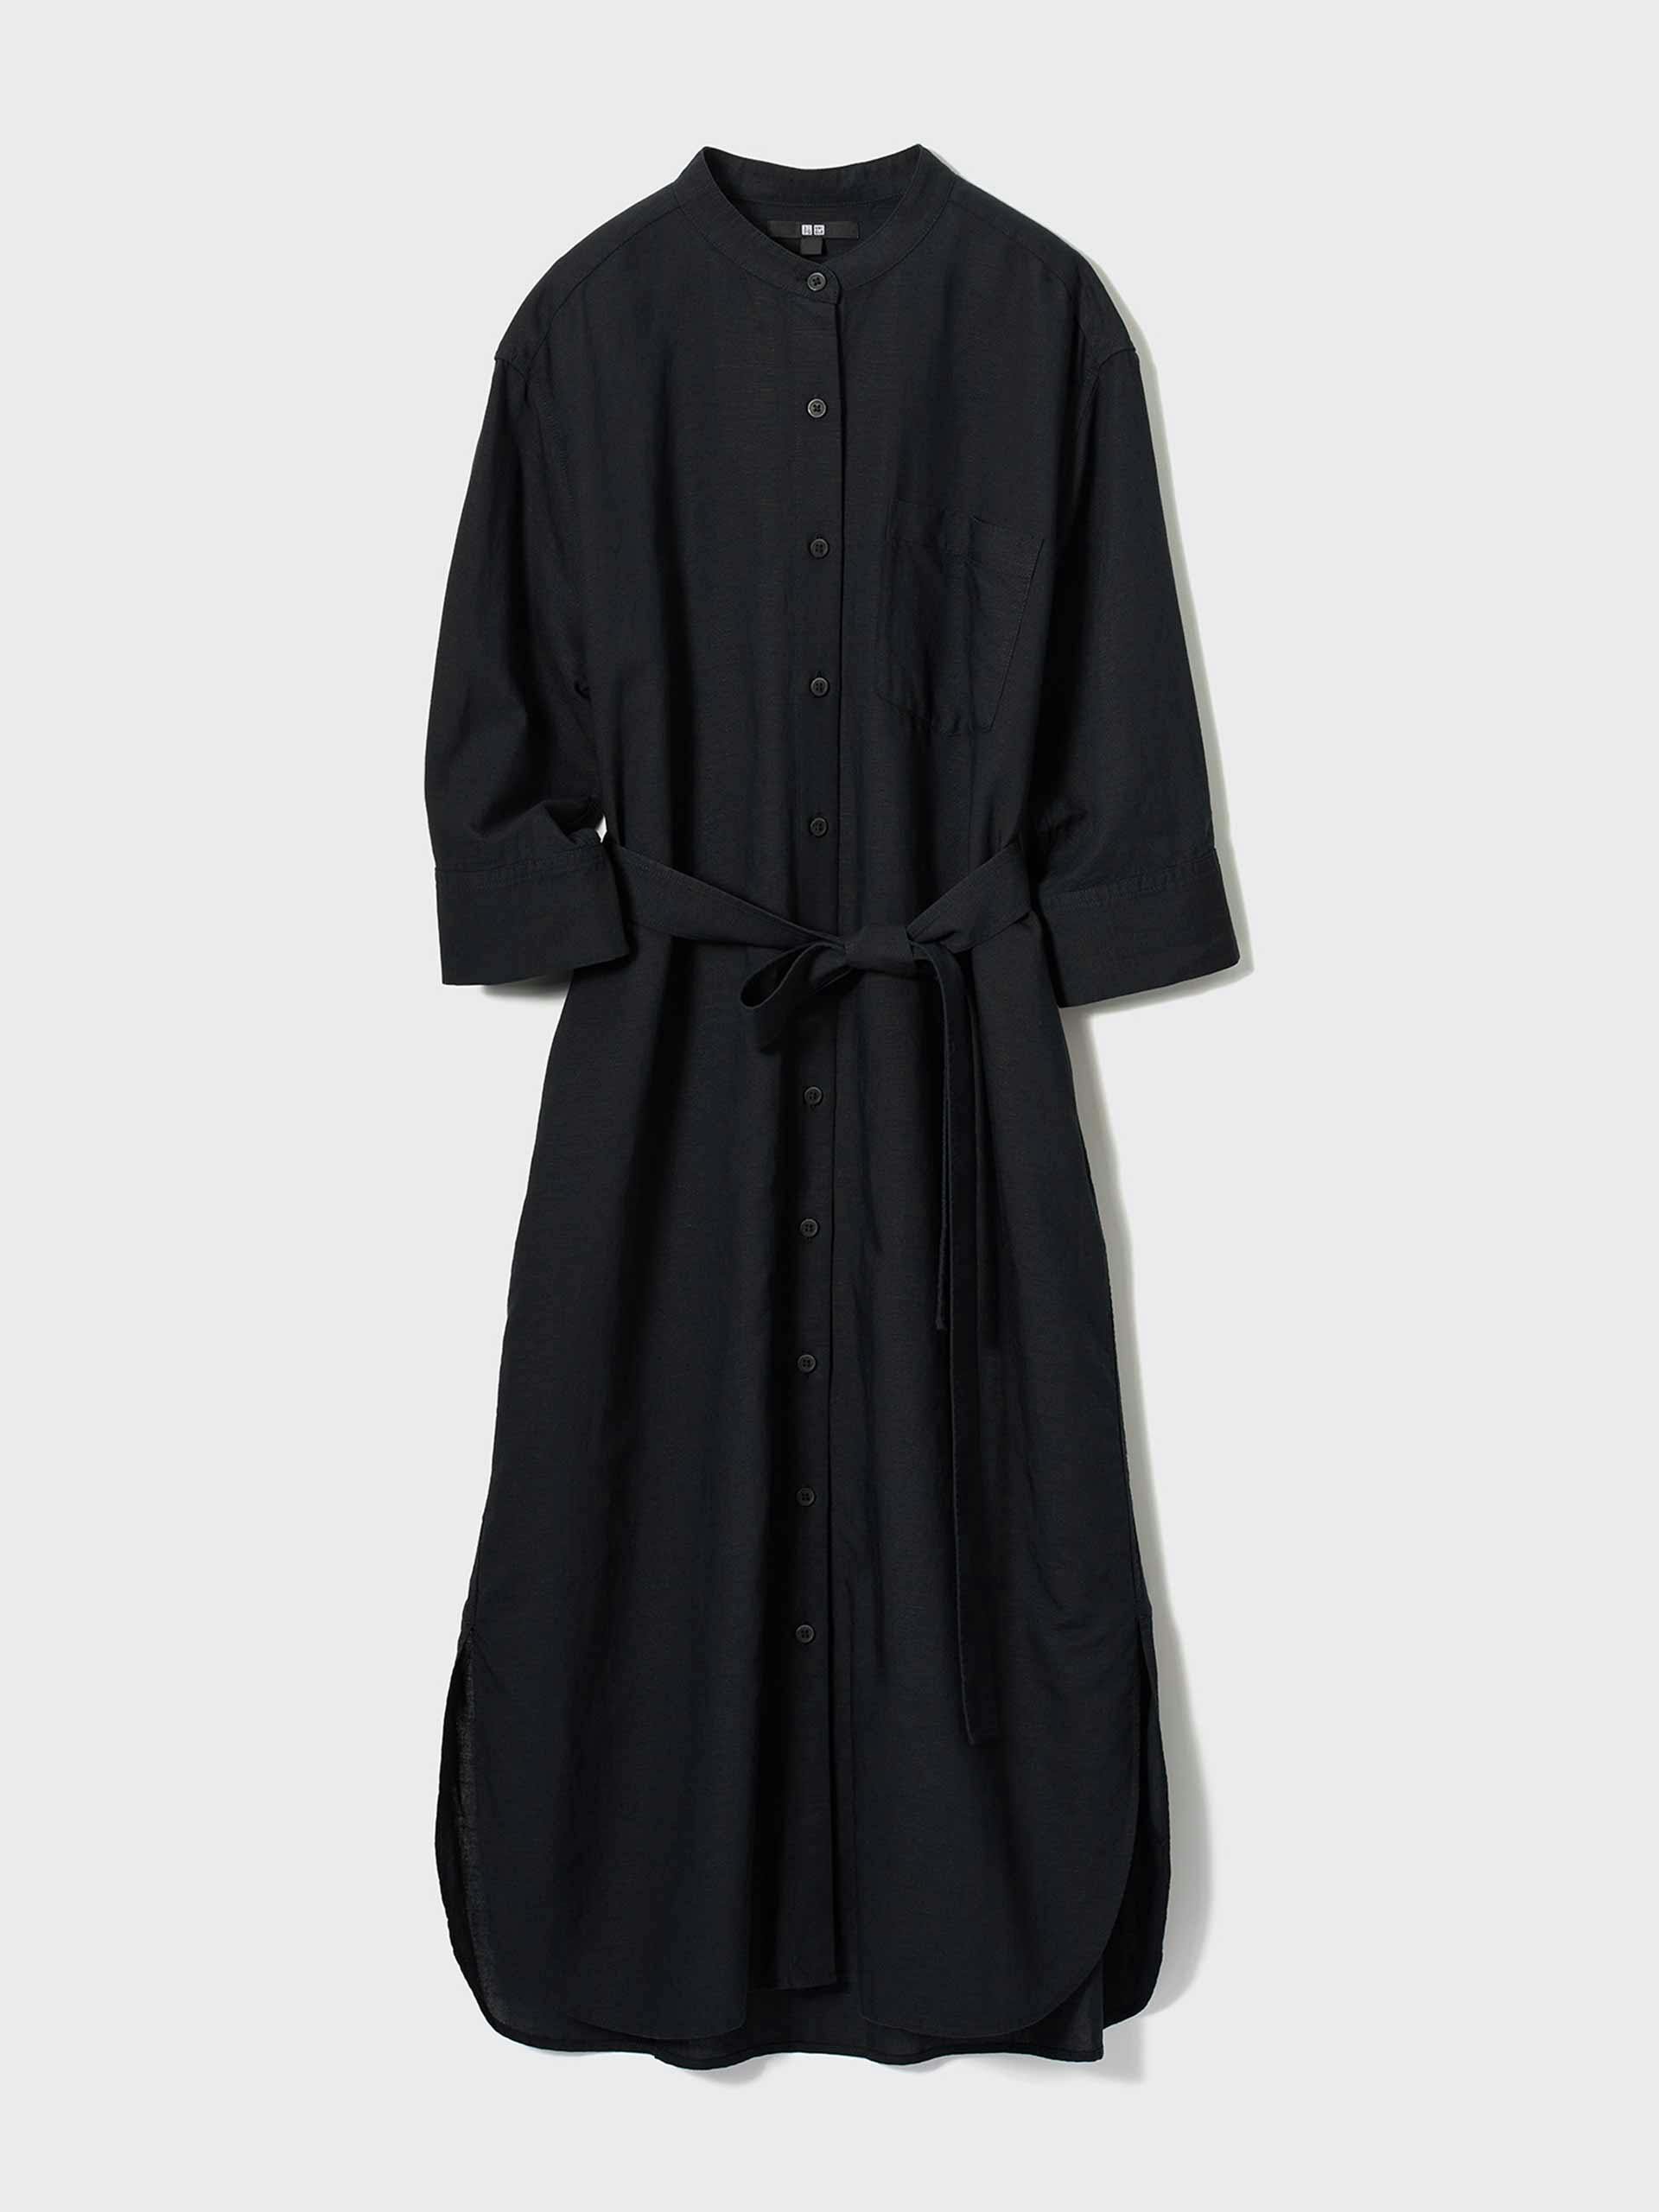 Black linen blend shirt dress